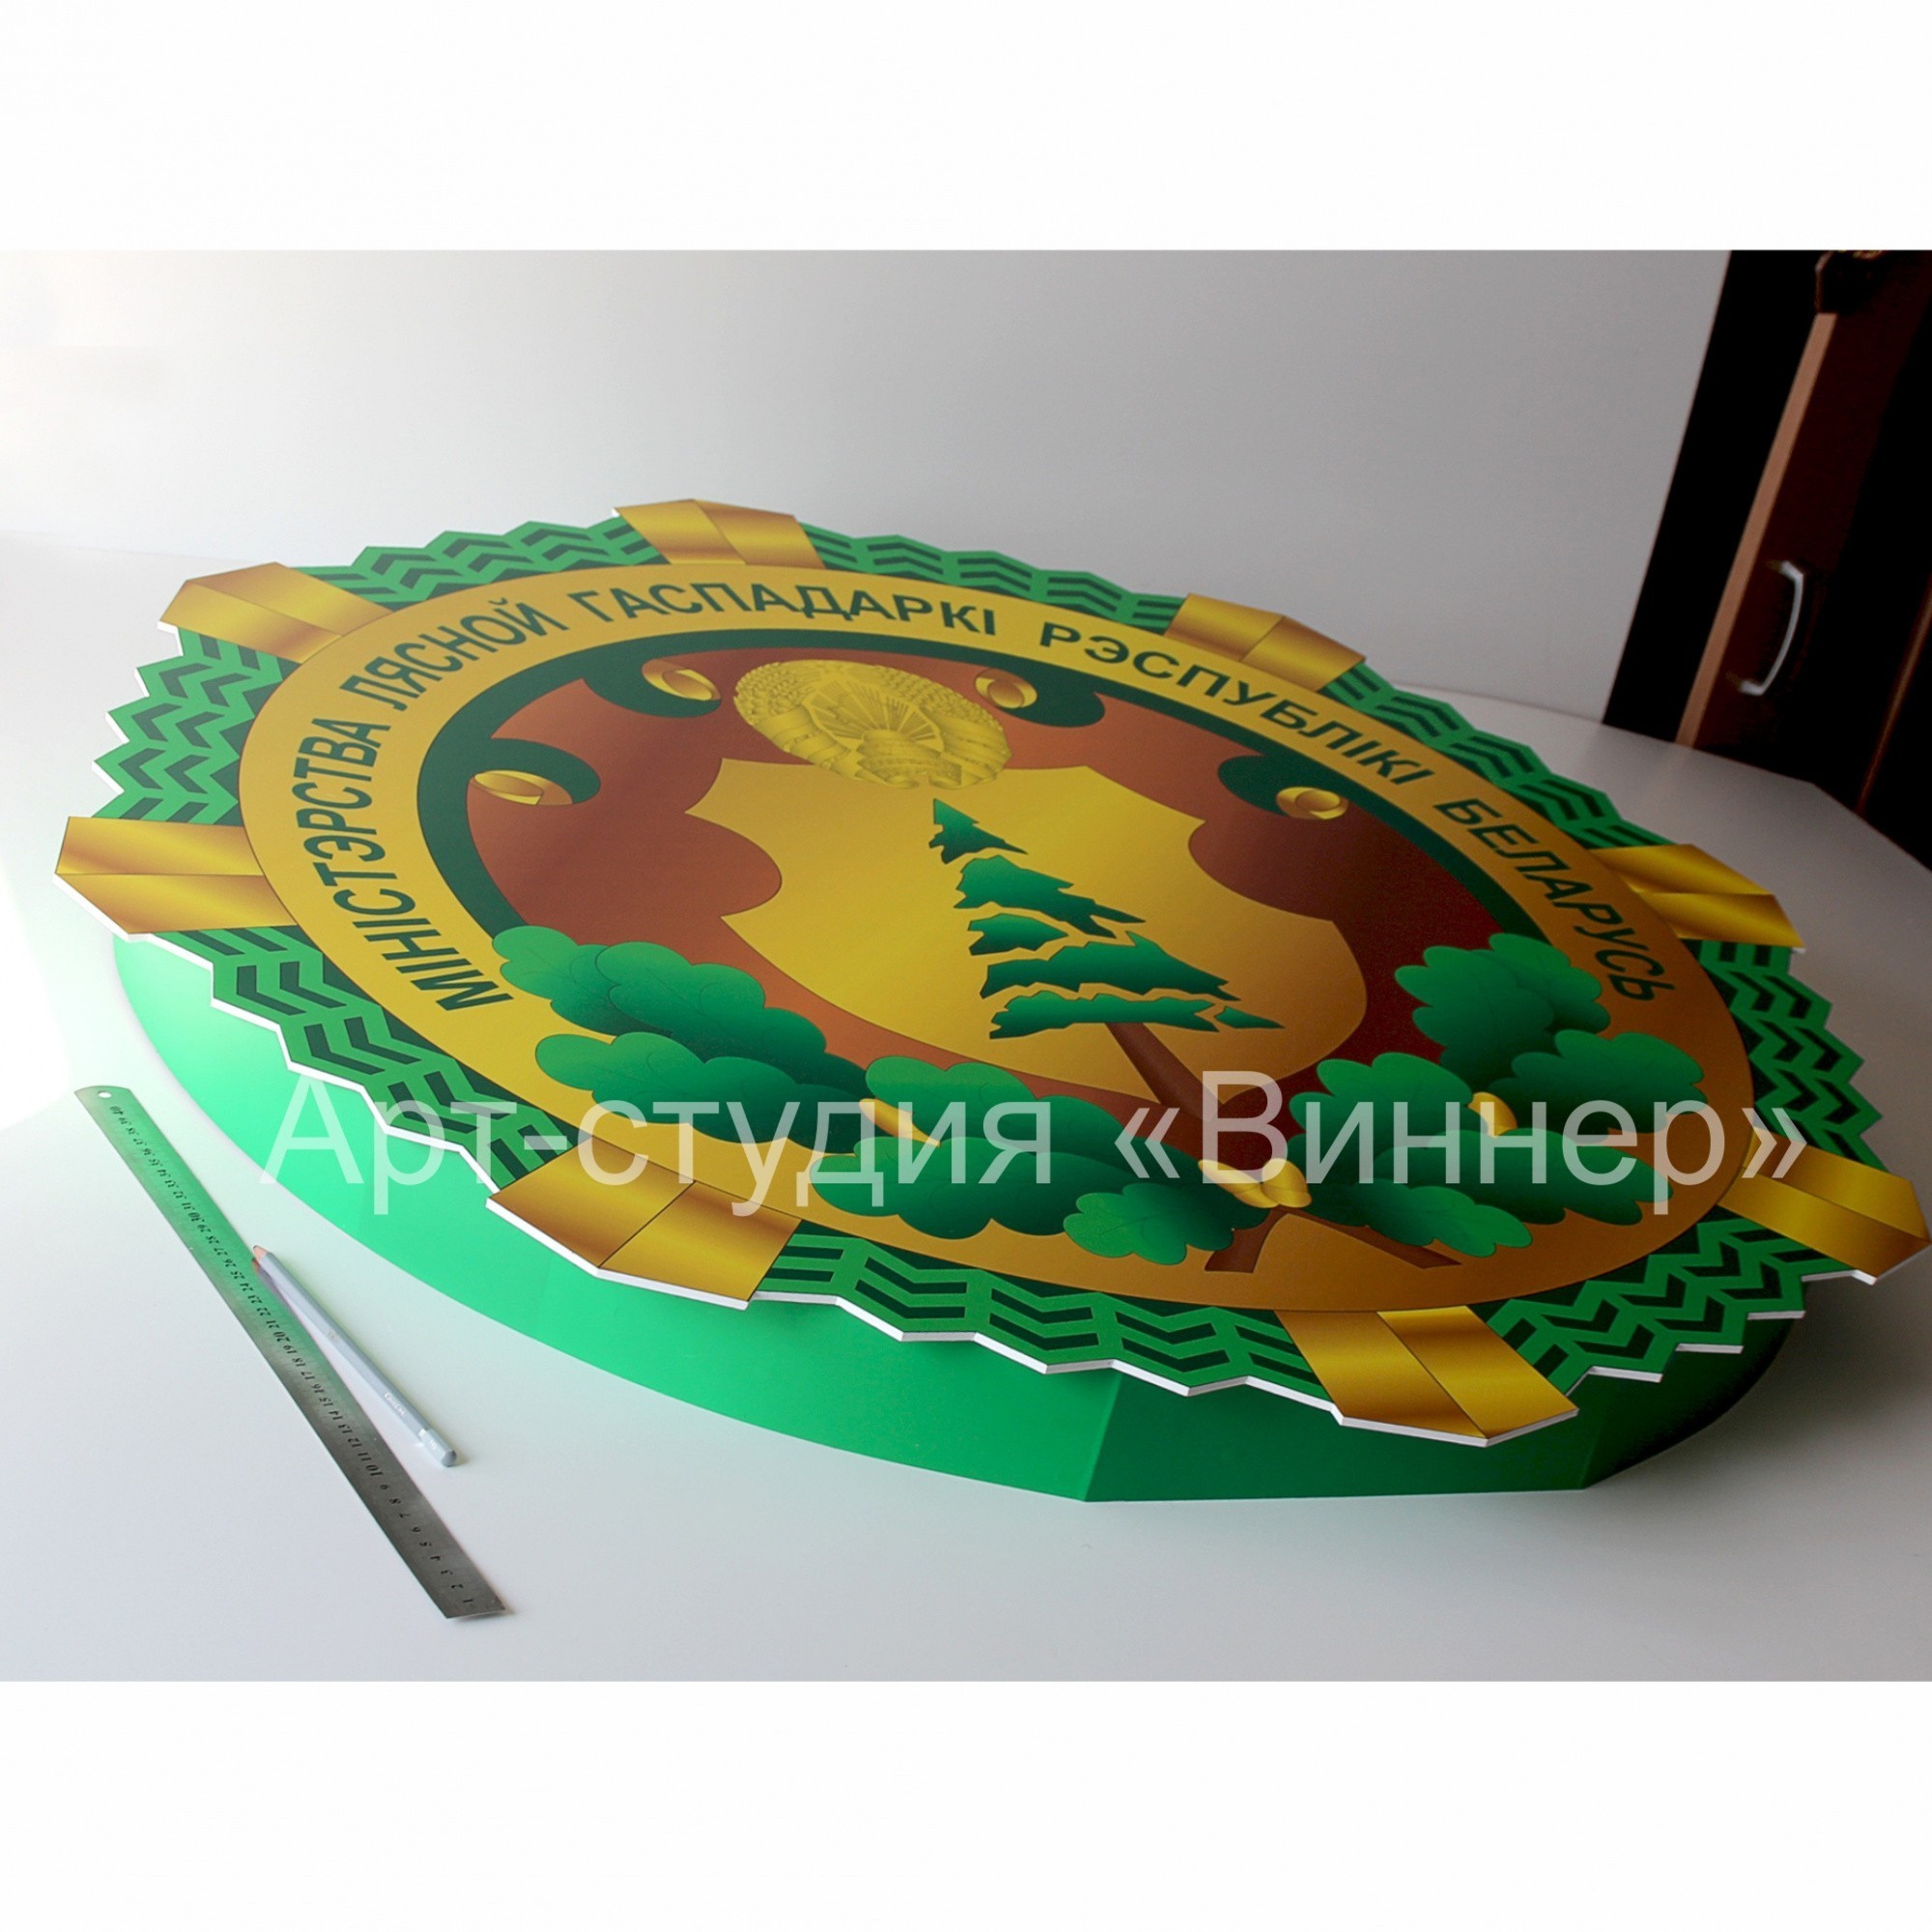 Логотип Министерства лесного хозяйства Республики Беларусь - фото